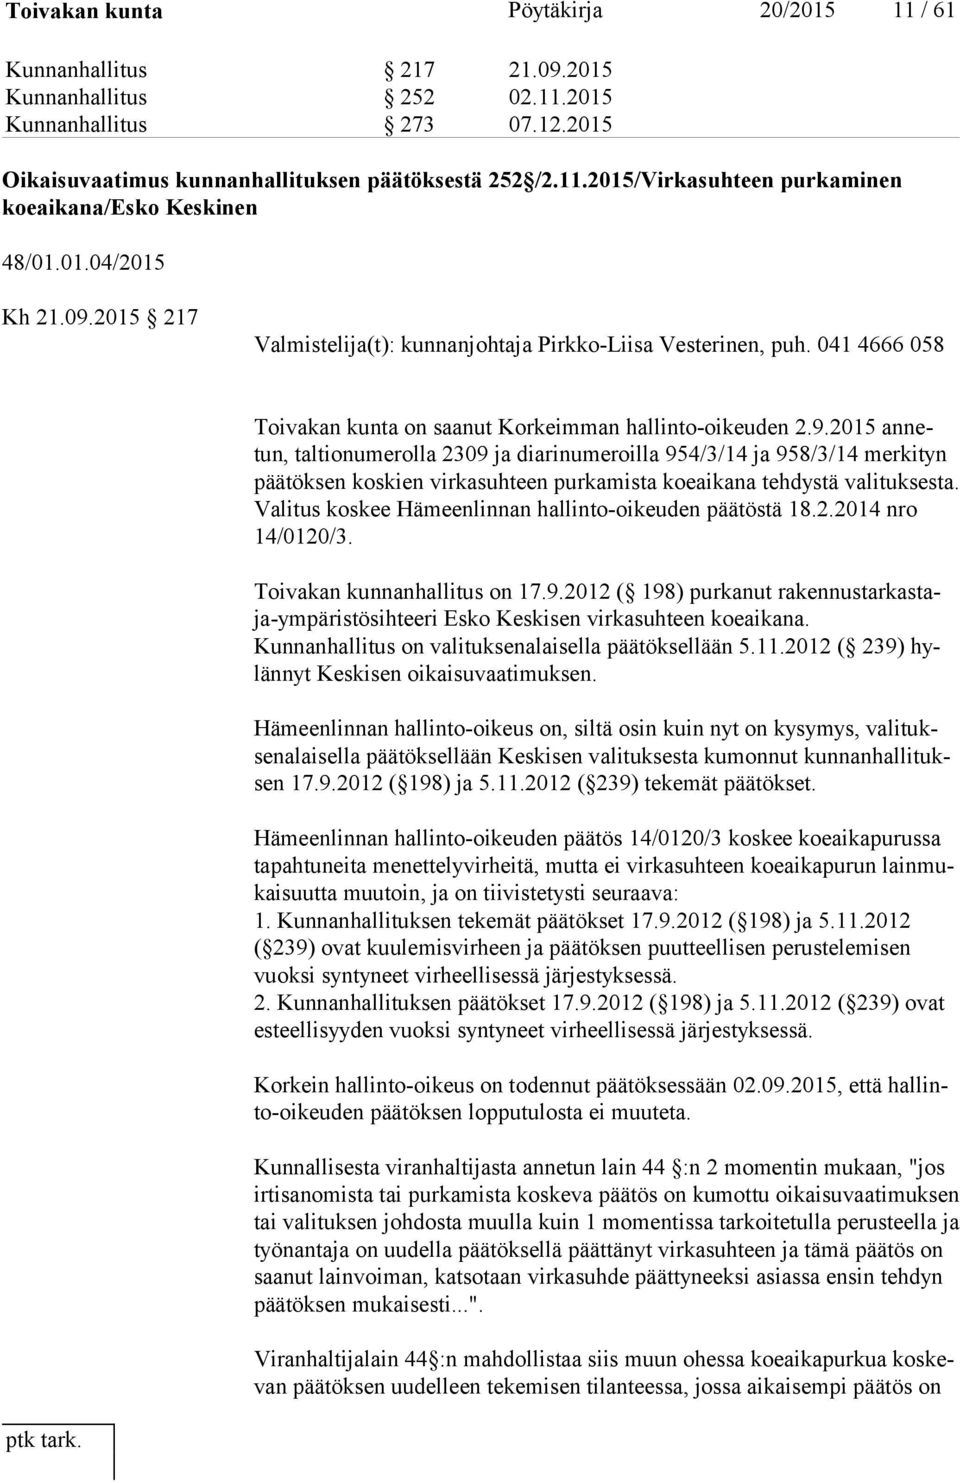 Va li tus koskee Hämeenlinnan hallinto-oikeuden päätöstä 18.2.2014 nro 14/0120/3. Toivakan kunnanhallitus on 17.9.